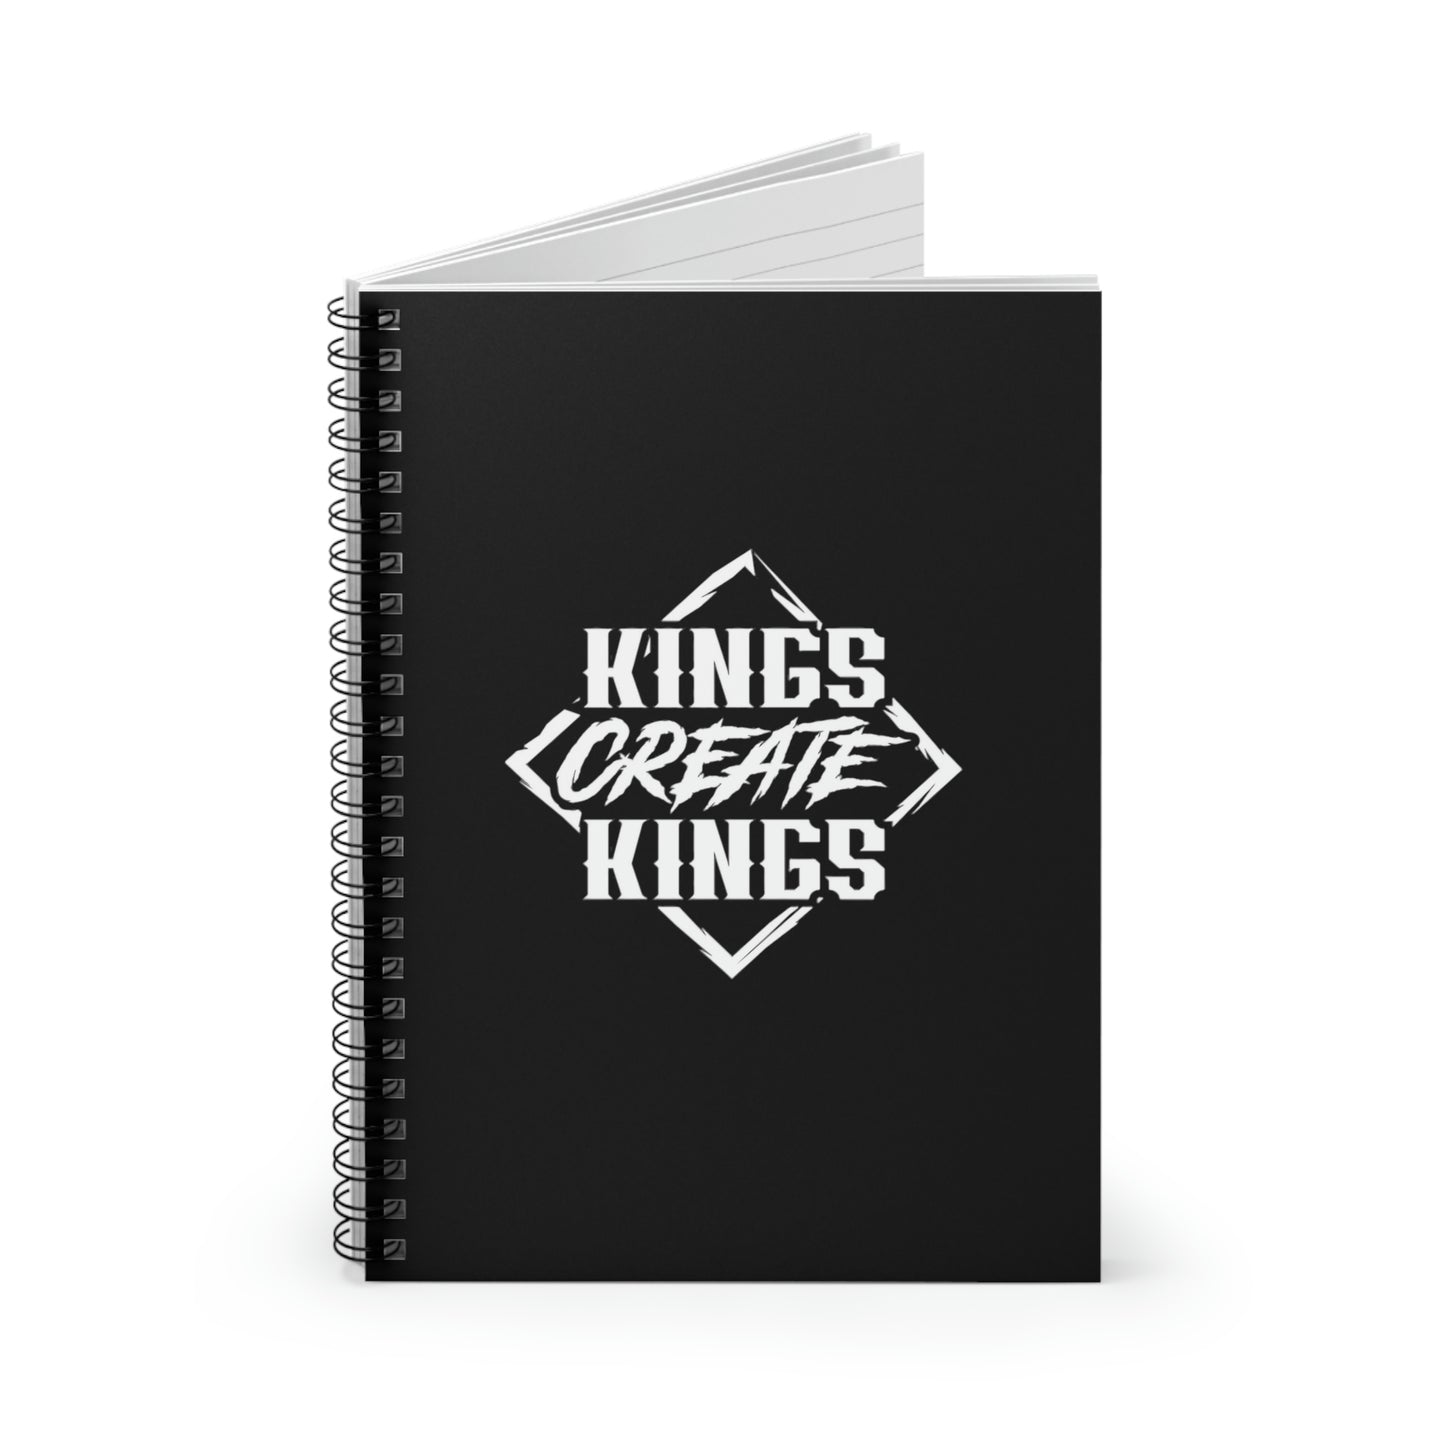 Kings Create Kings Spiral Notebook